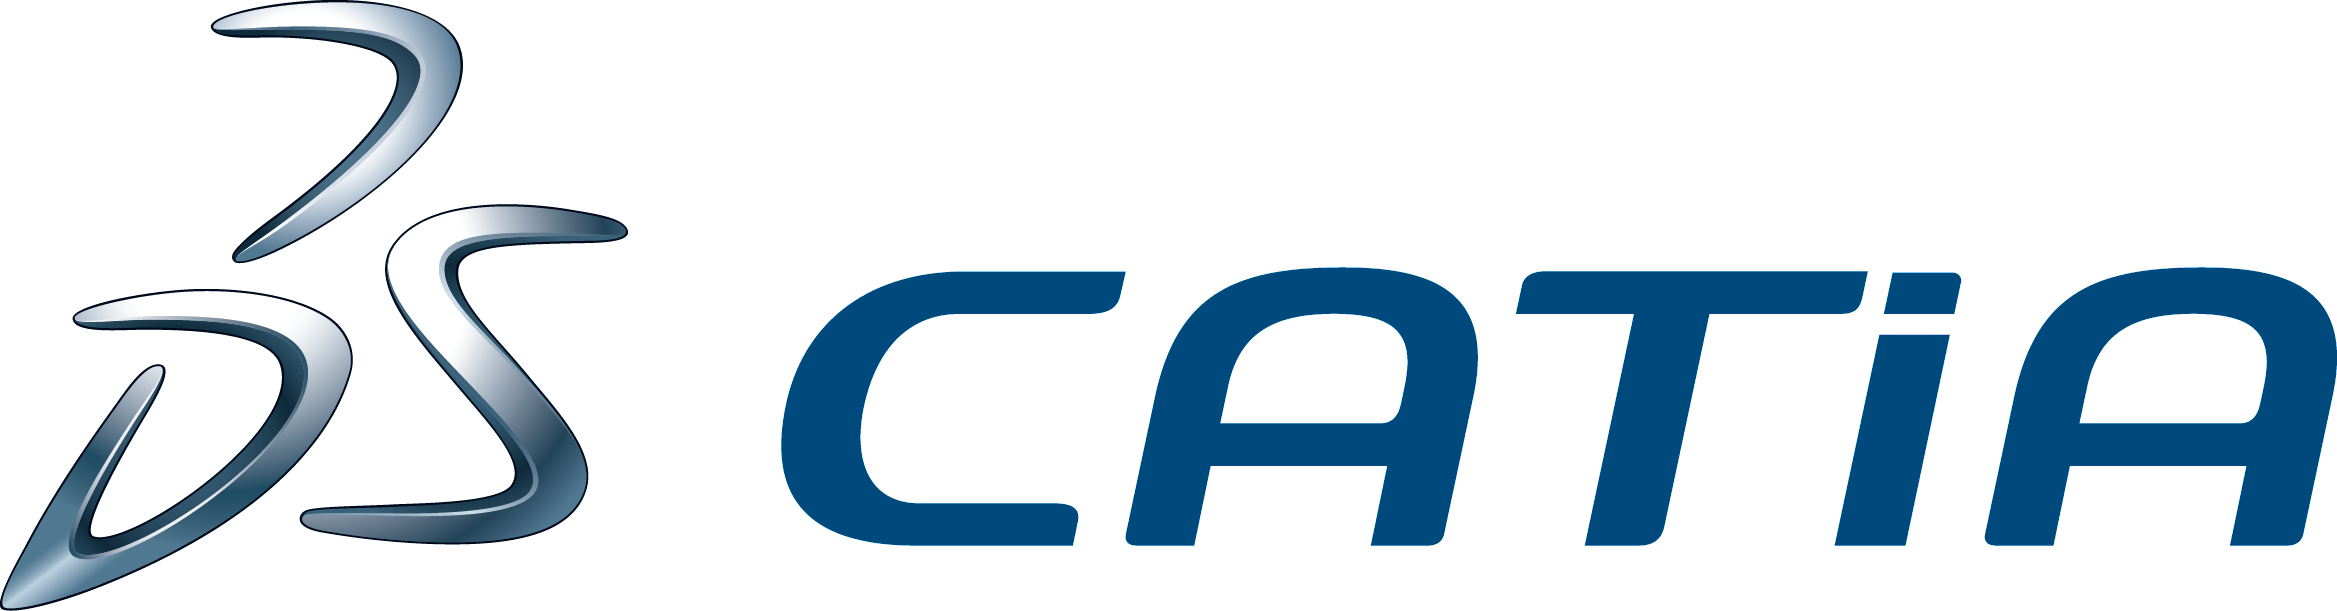 CATIA_Blue_Logostyle